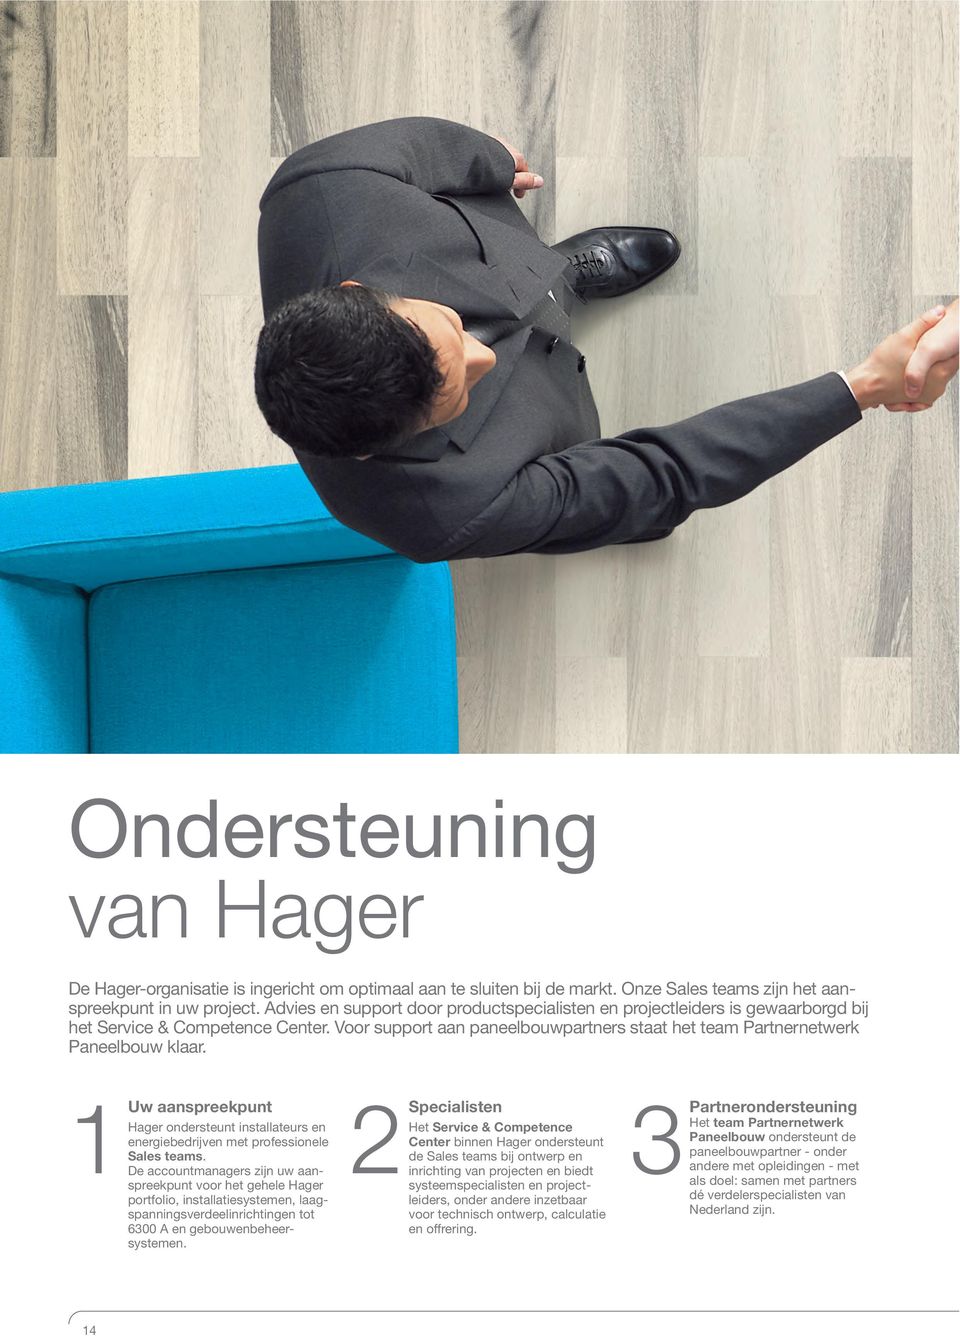 1Uw aanspreekpunt Hager ondersteunt installateurs en energiebedrijven met professionele Sales teams.